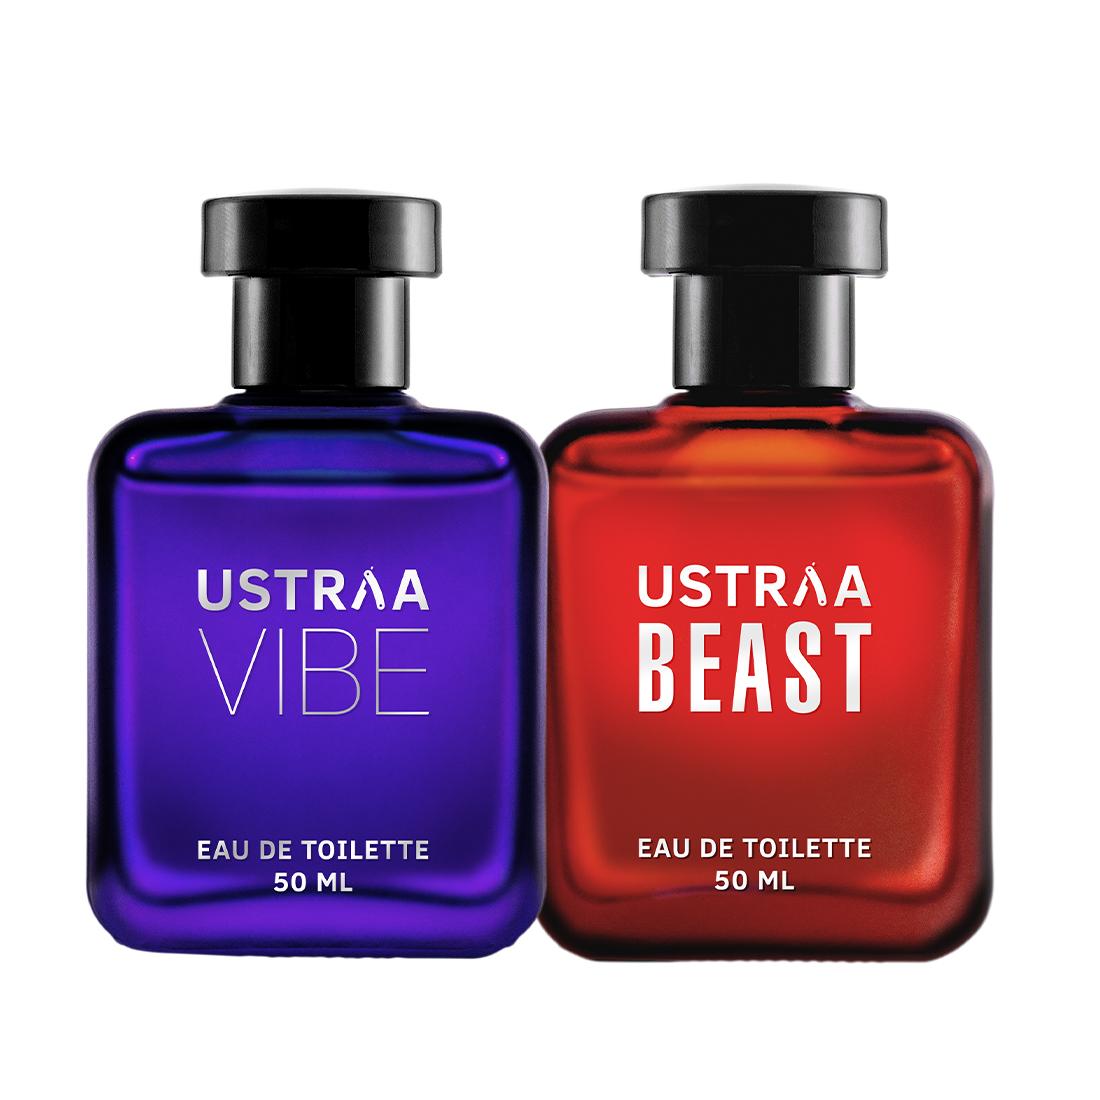 EDT Vibe & Beast - Set of 2 - Perfume for Men - 50ml each